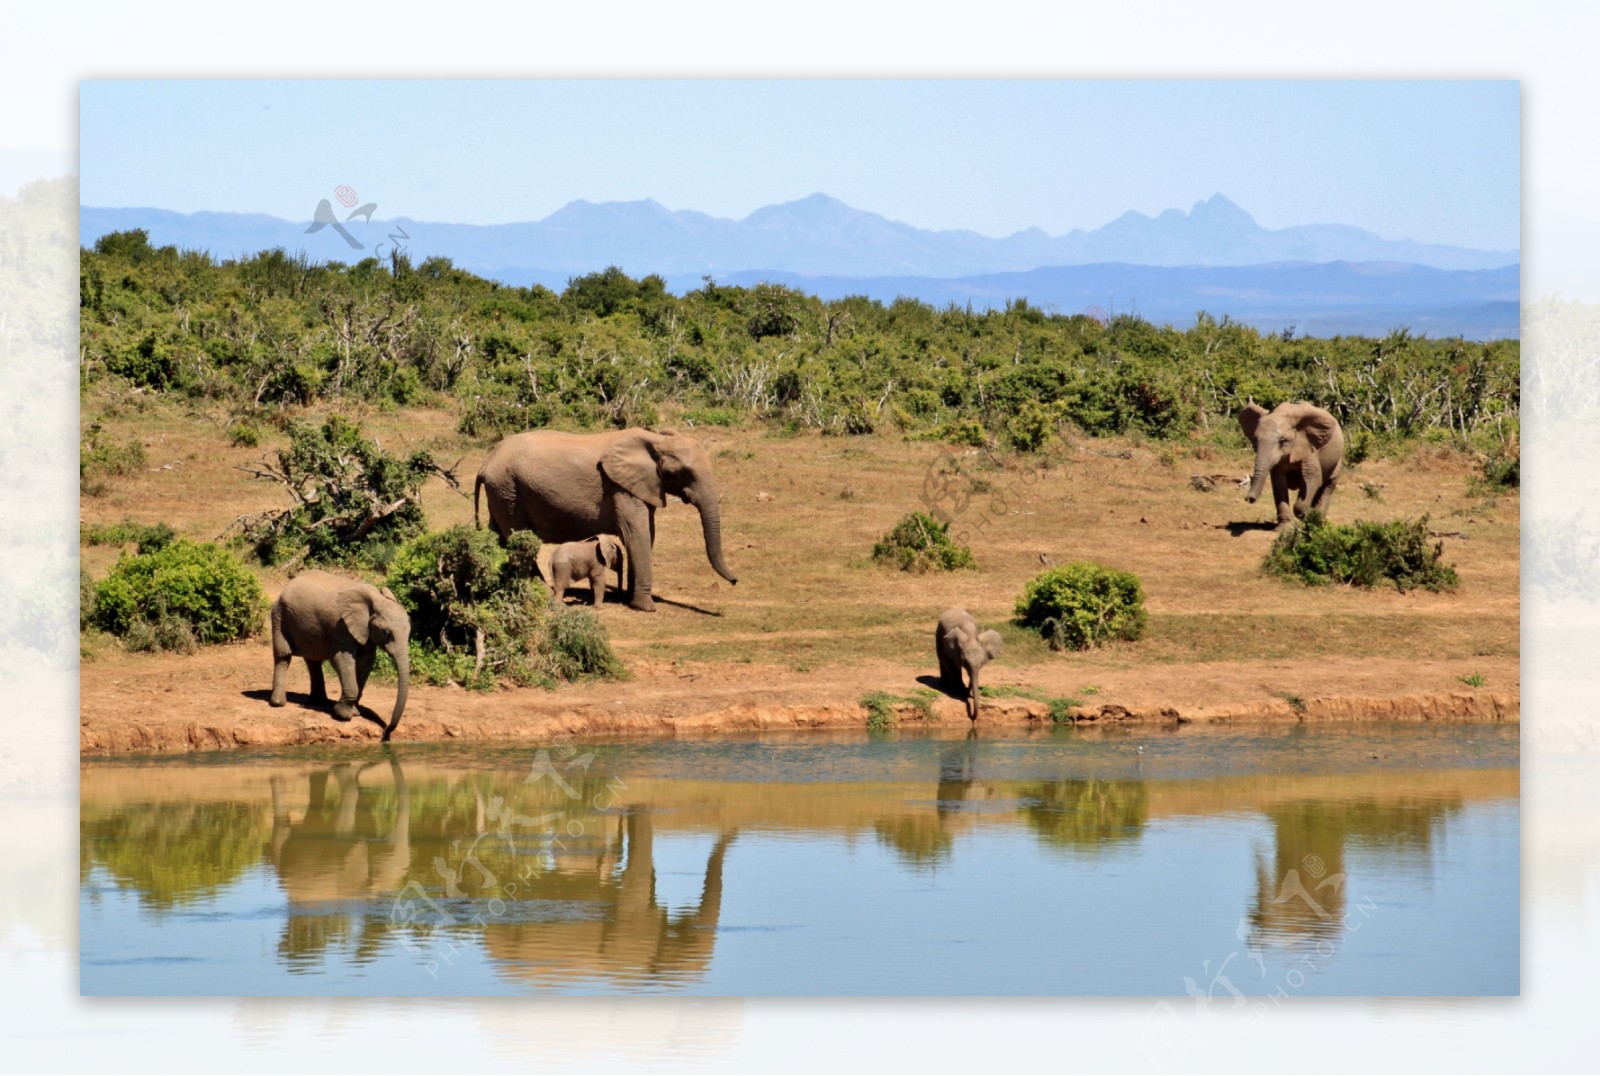 非洲野生大象图片